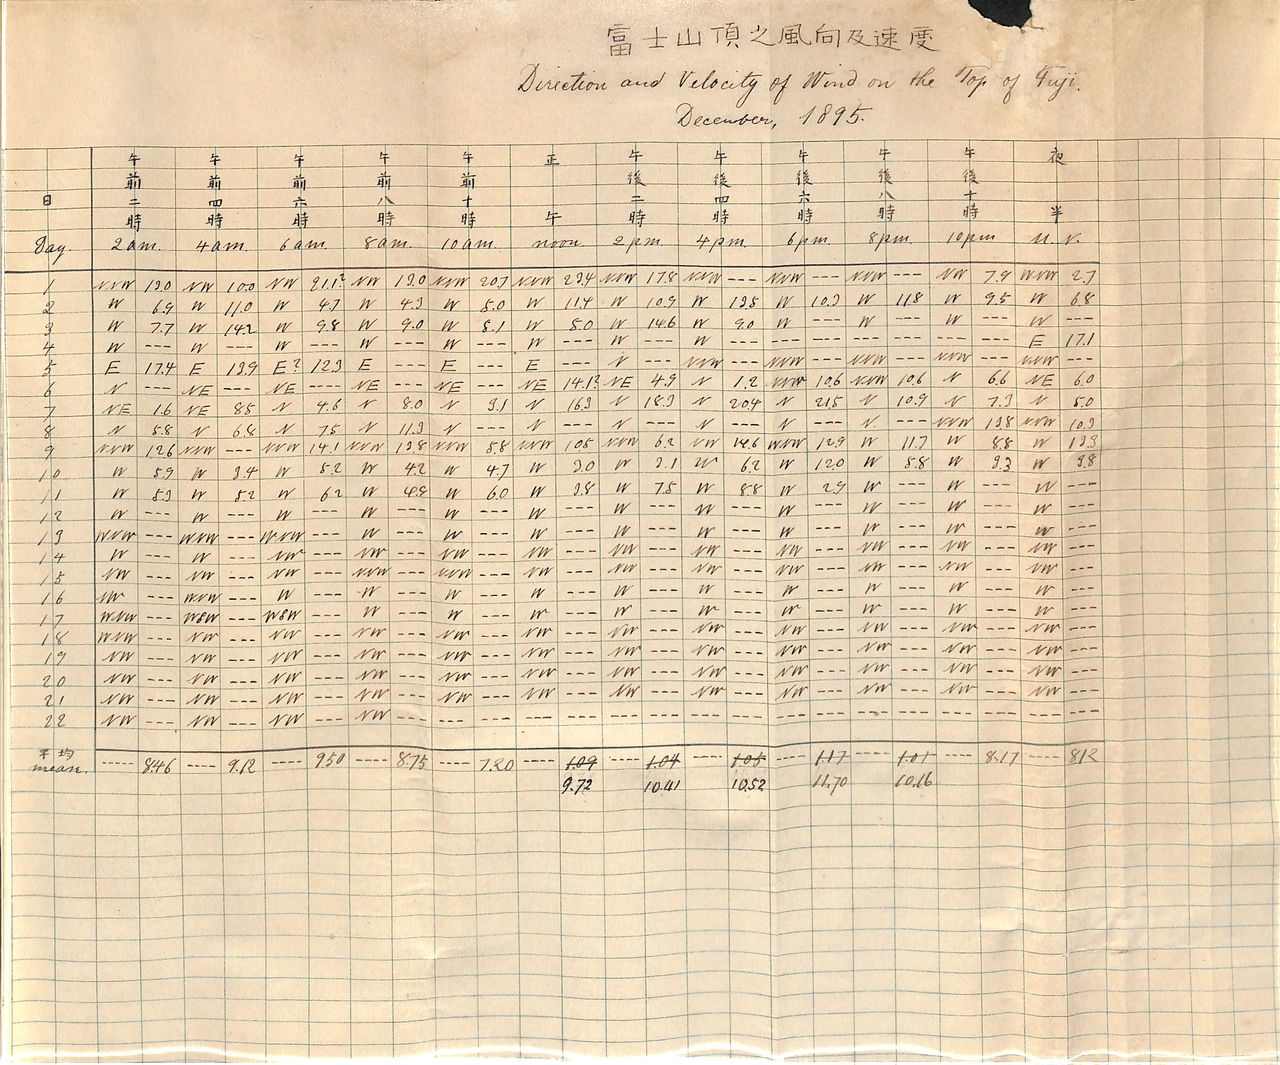 Registro de las observaciones de Itaru y Chiyoko Nonaka. Termina el 22 de diciembre de 1895, cuando el equipo de ayuda obligó al matrimonio a bajar del volcán. (Fotografía del Archivo de Nonaka Itaru y Chiyoko, conservada por el nieto, Nonaka Masaru.)